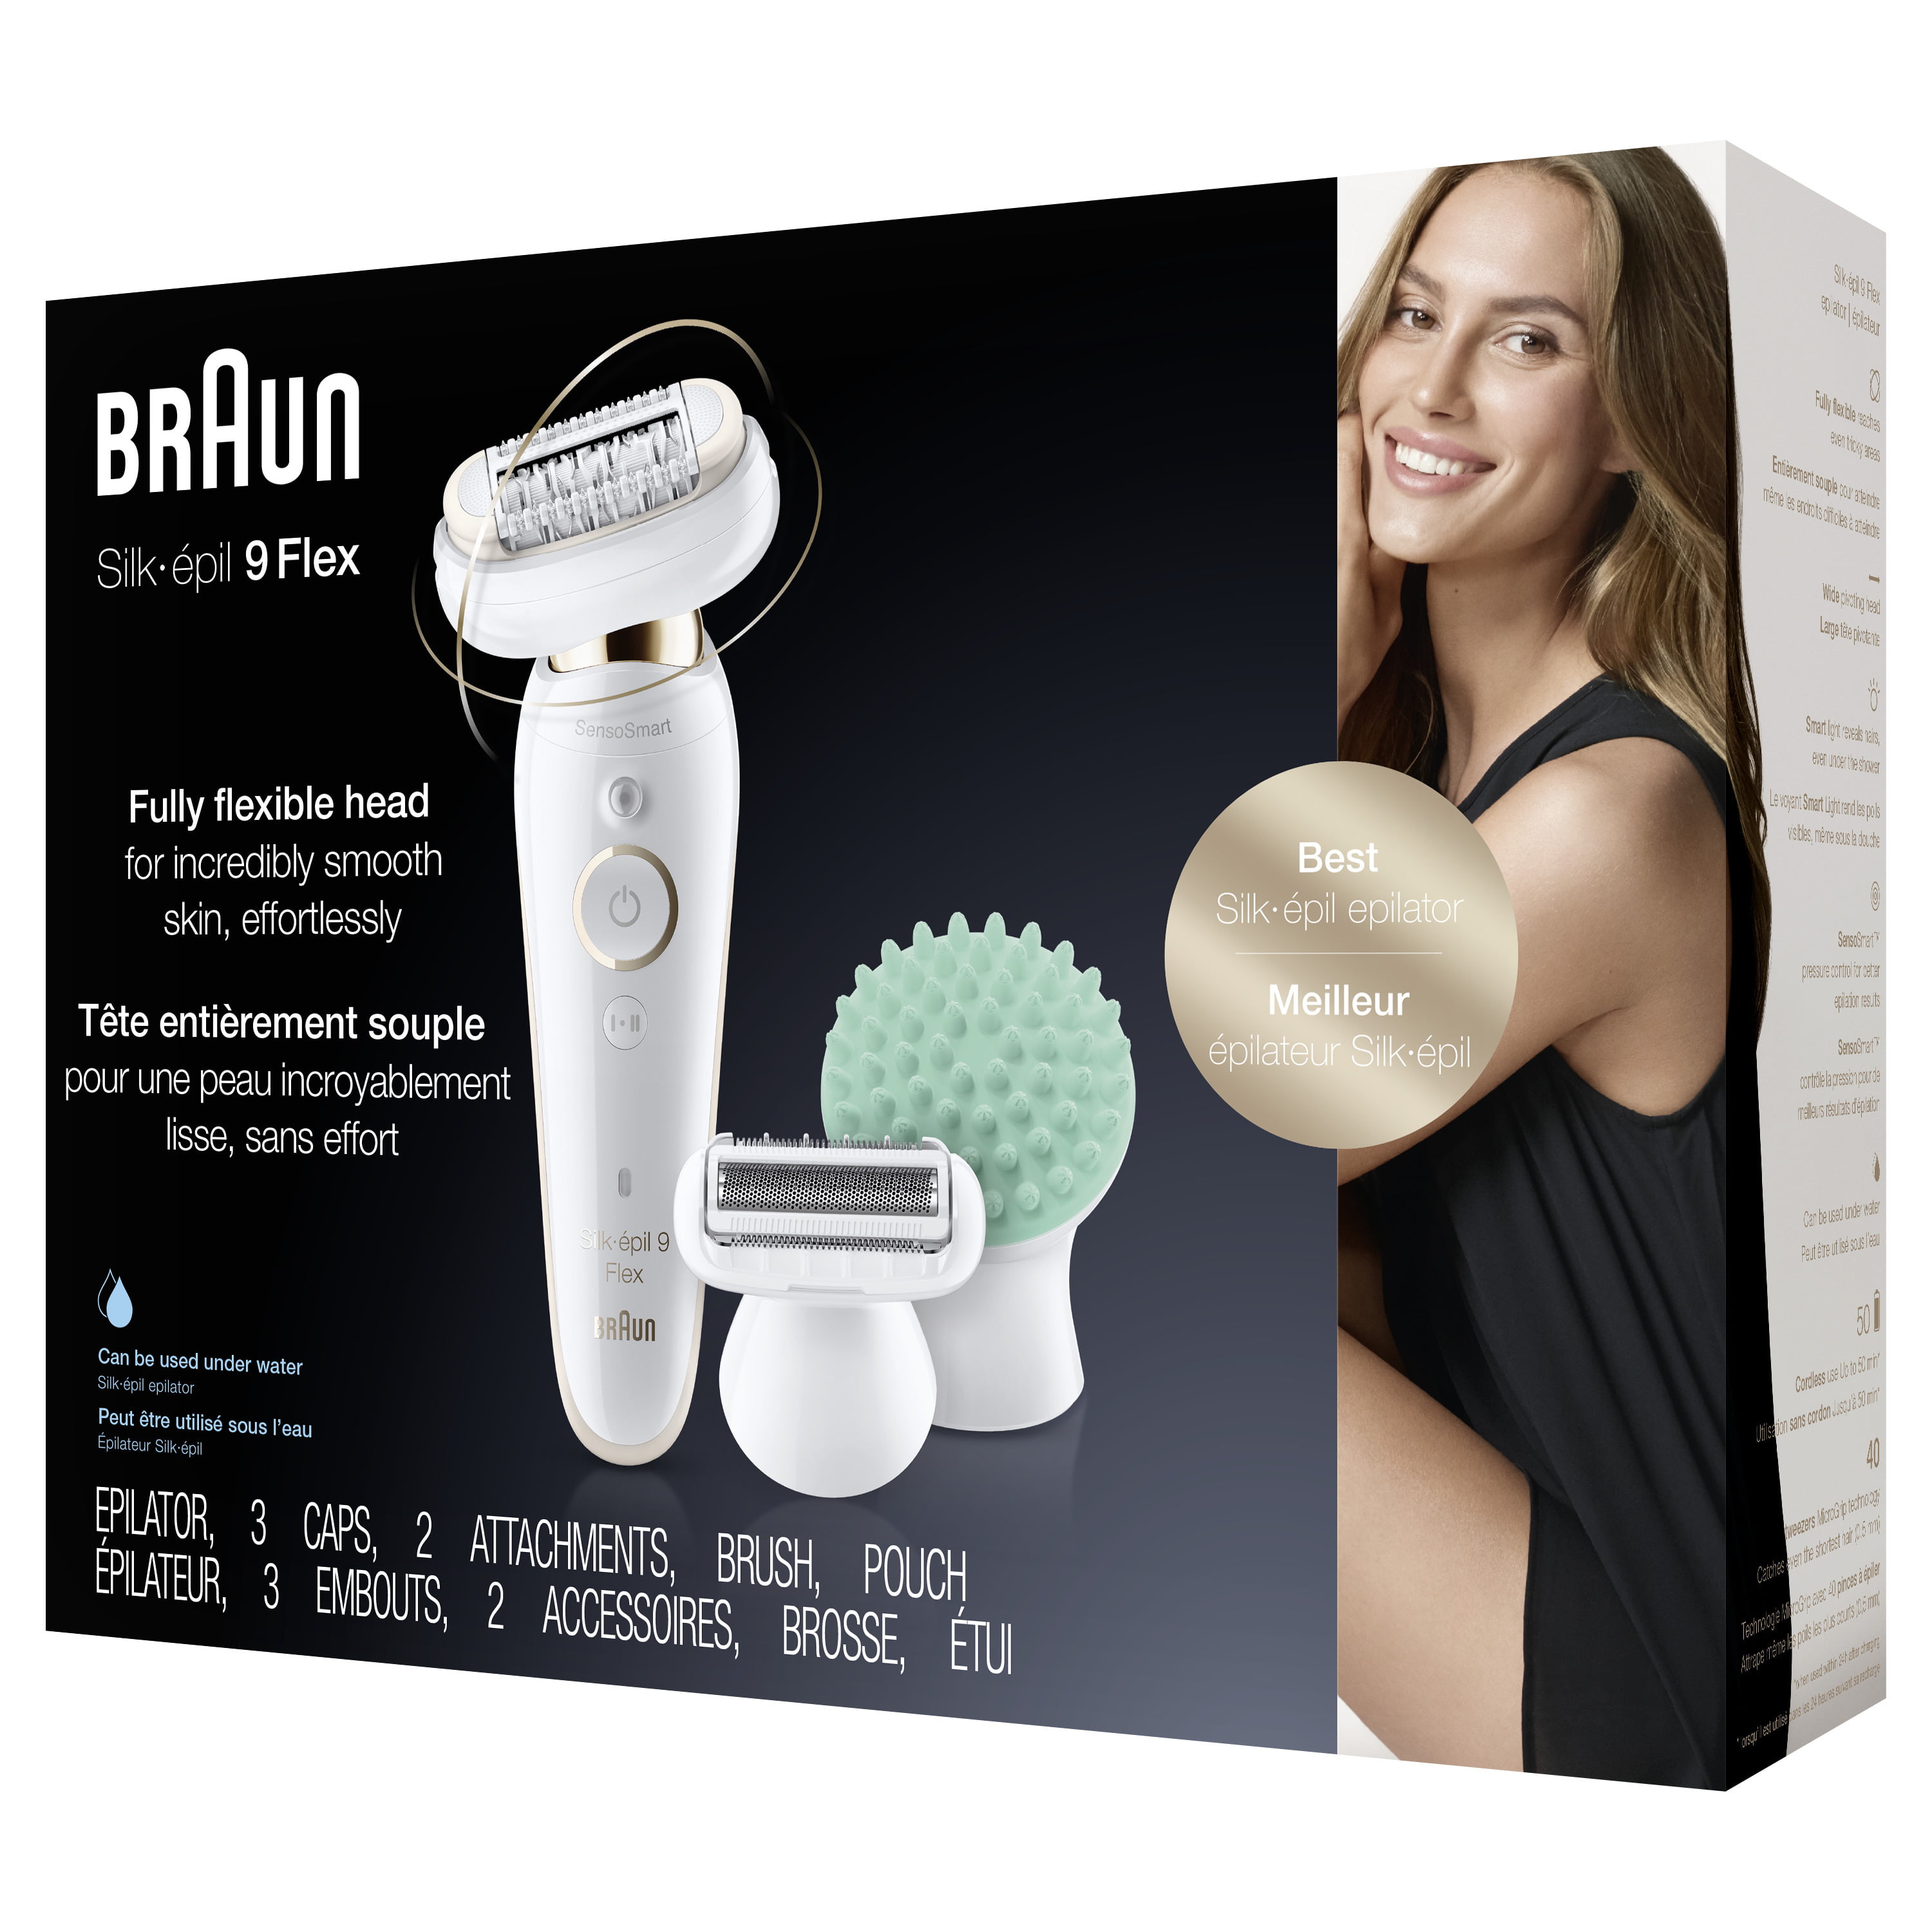 Overeenstemming Varen Leven van Braun Silk-epil 9 Flex 9-020 - Epilator for Women with Flexible Head for  Easier Hair Removal, White/Gold - Walmart.com